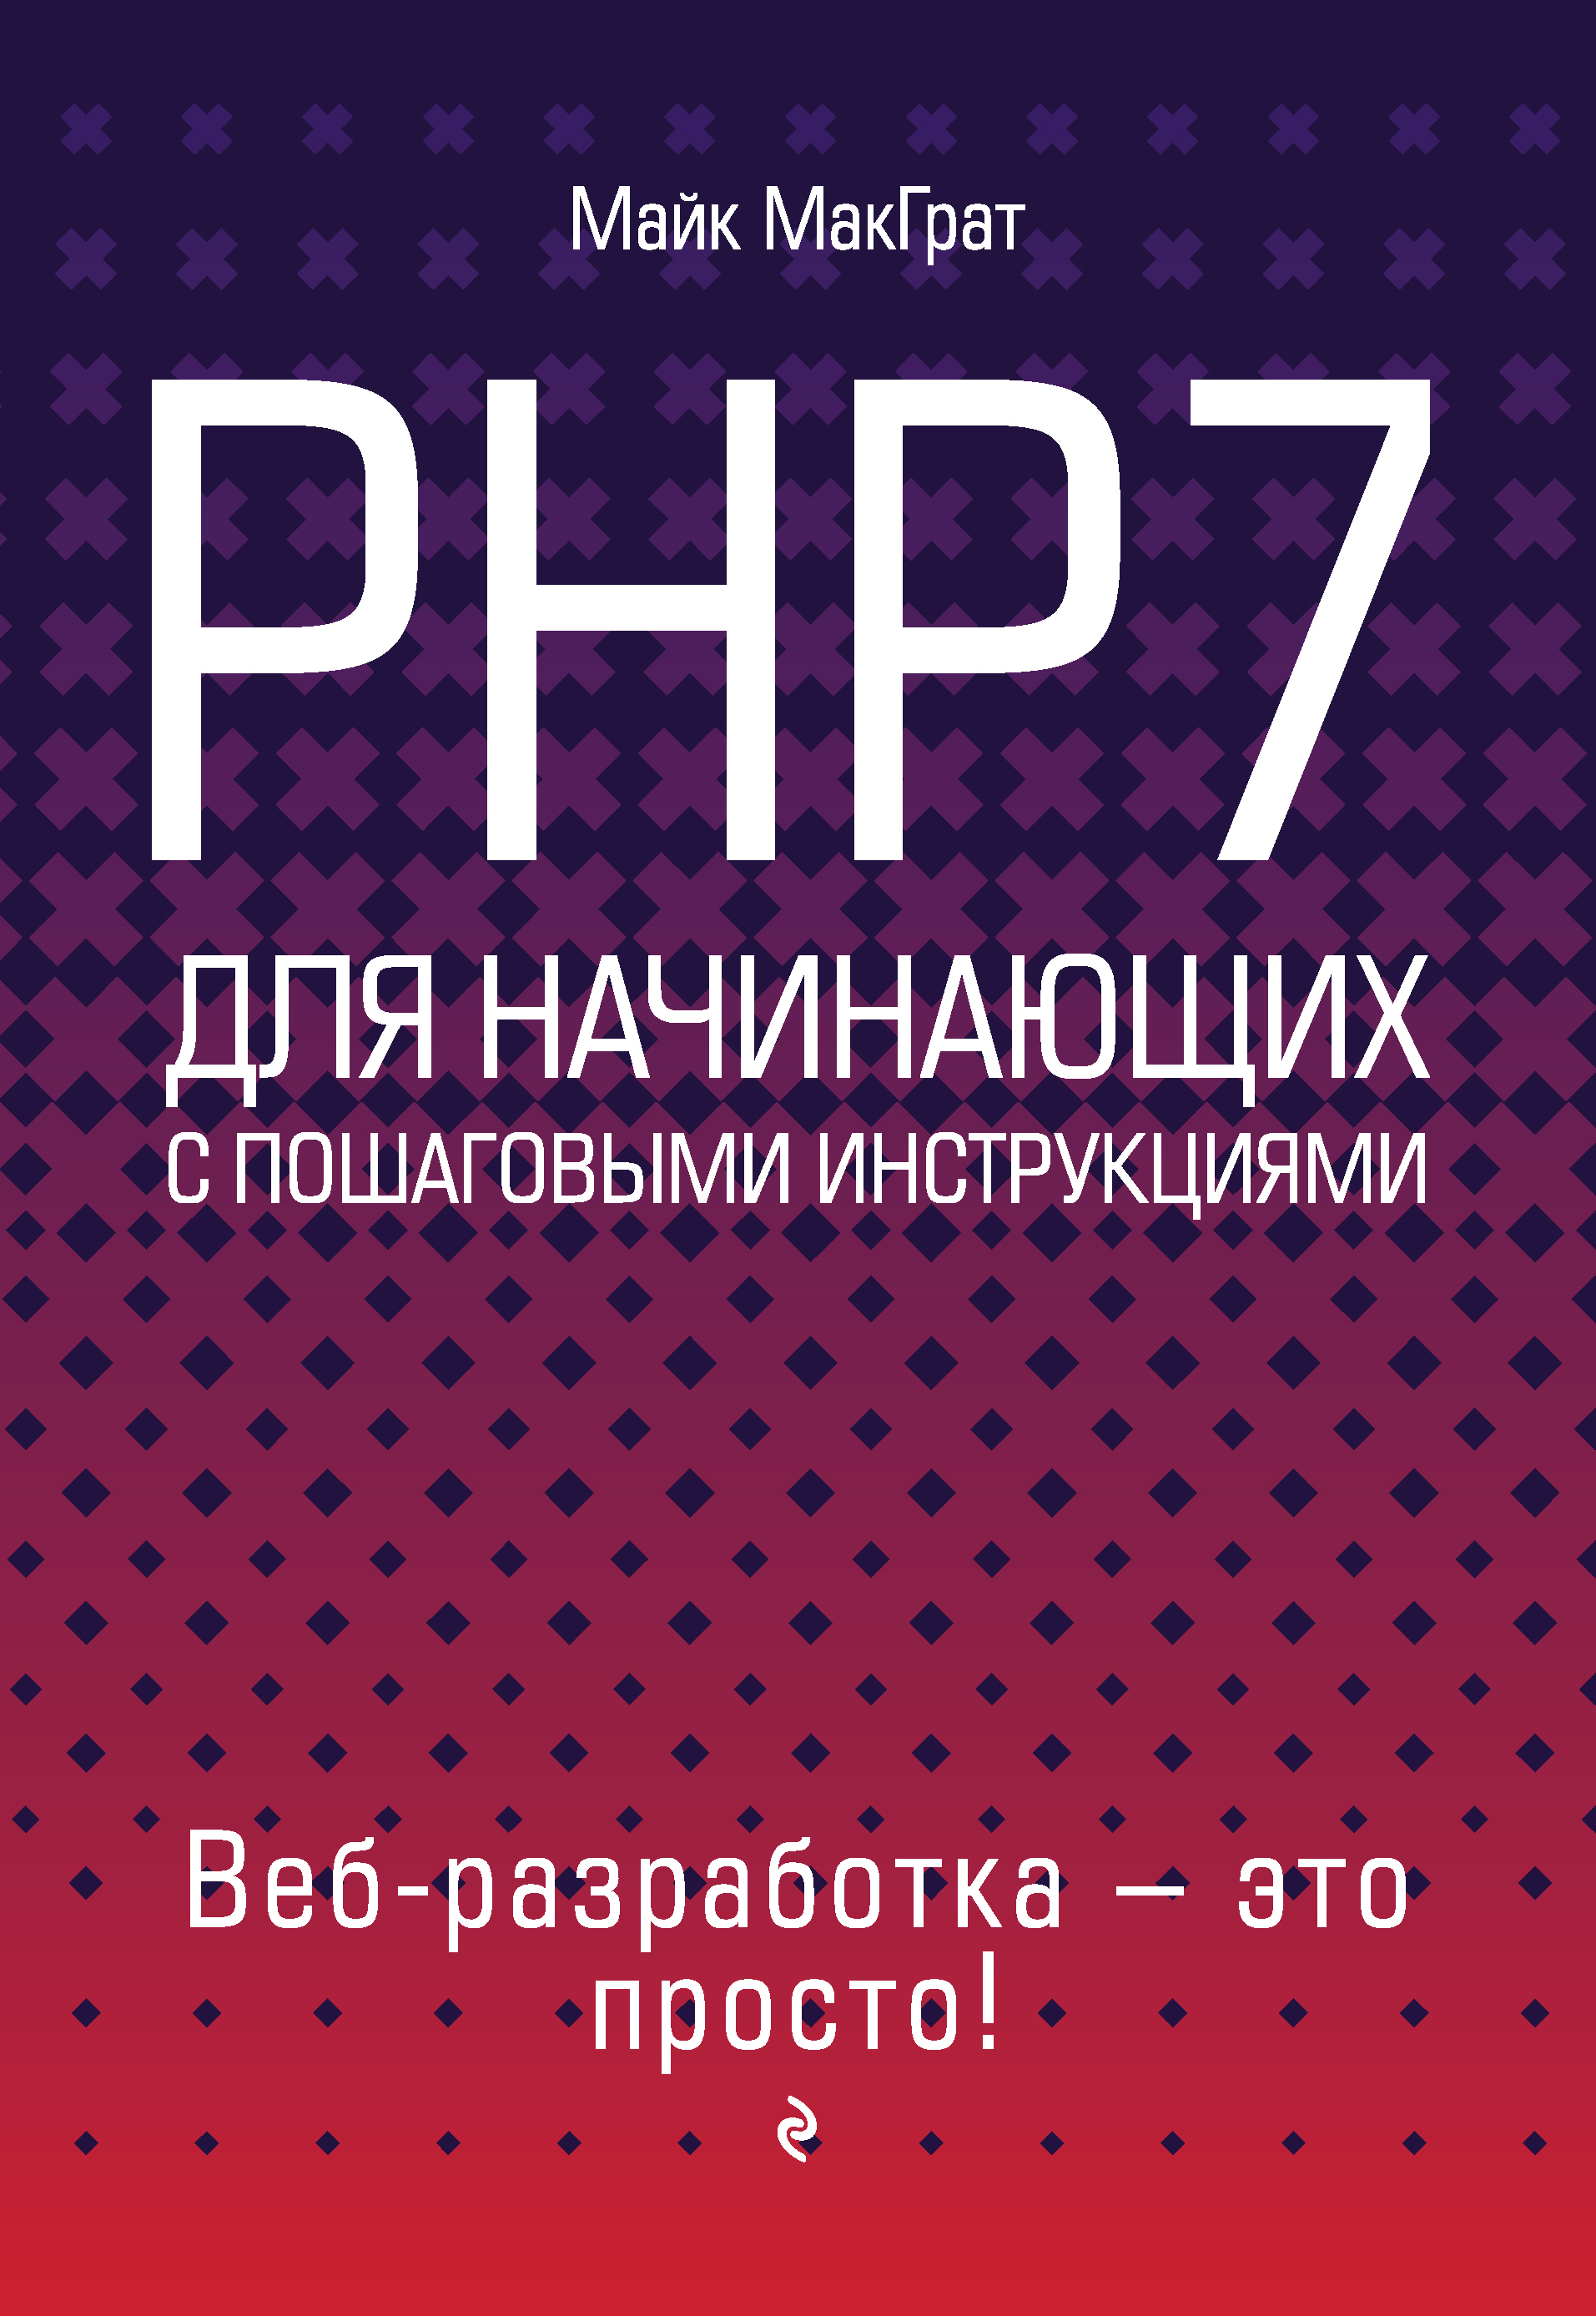 PHP7для начинающих с пошаговыми инструкциями